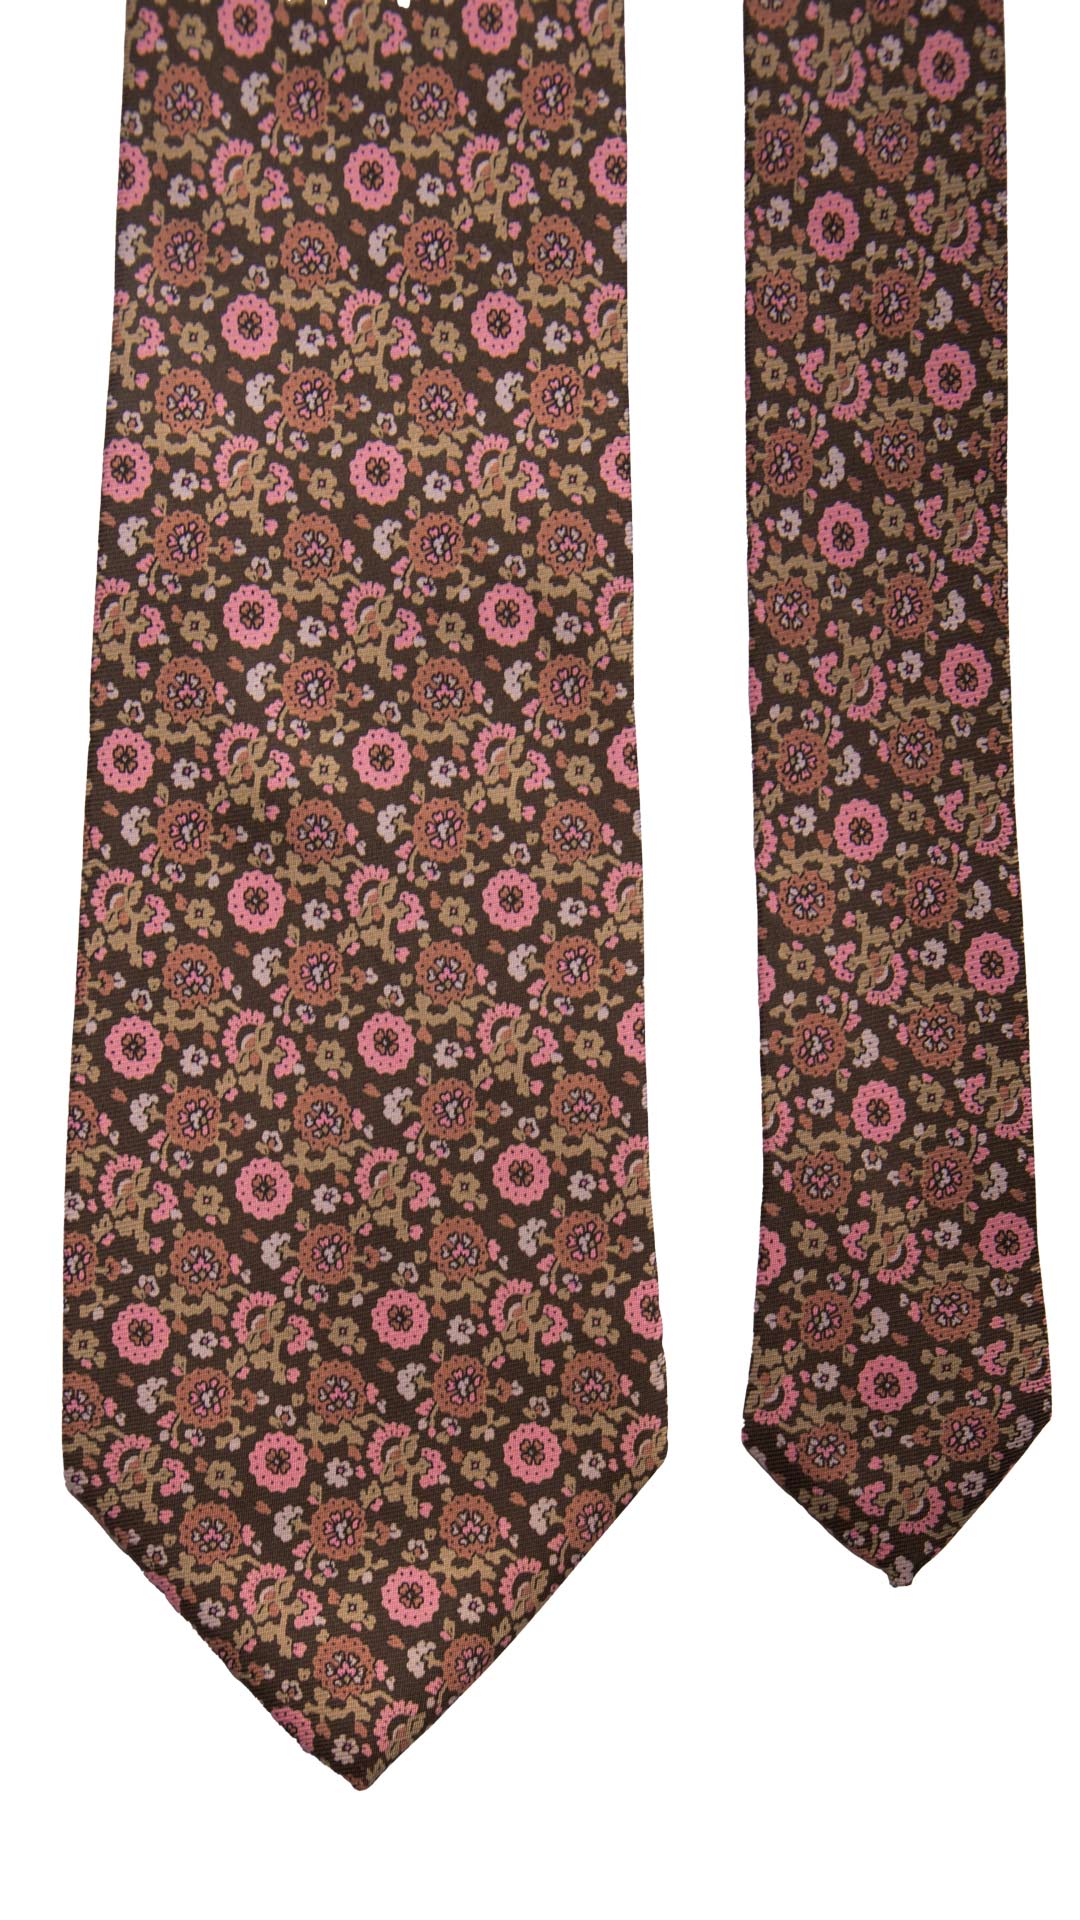 Cravatta Vintage in Twill di Seta Marrone A Fiori Rosa Rosa Antico Beige CV764 Pala